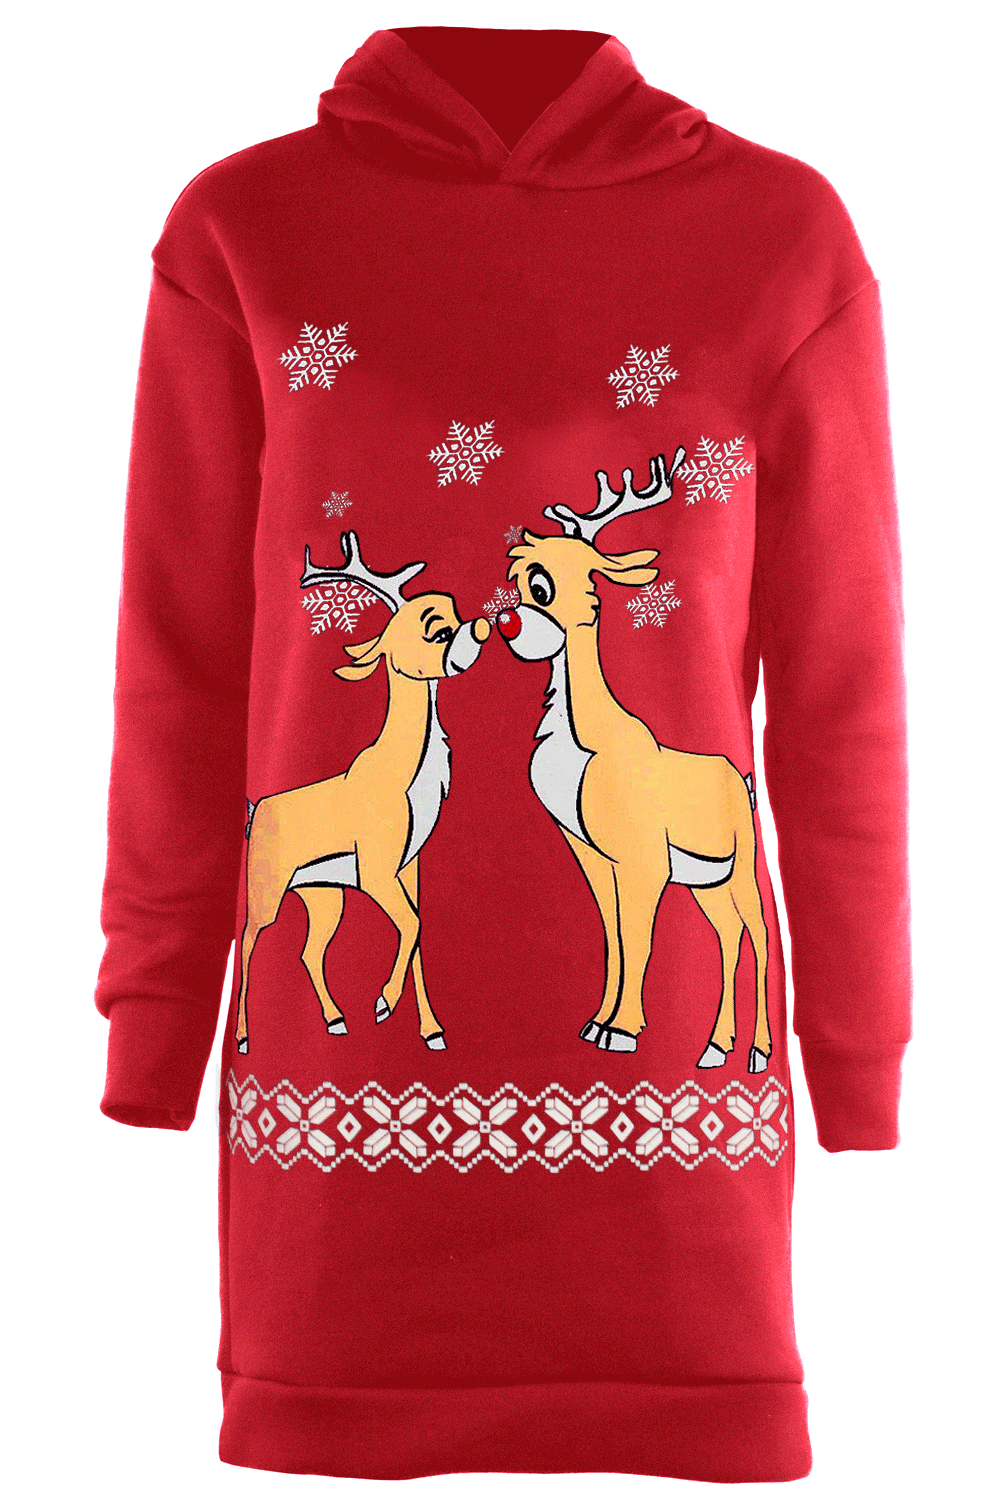 Elsie Long Sleeve Reindeer Graphic Print Christmas Jumper Dress